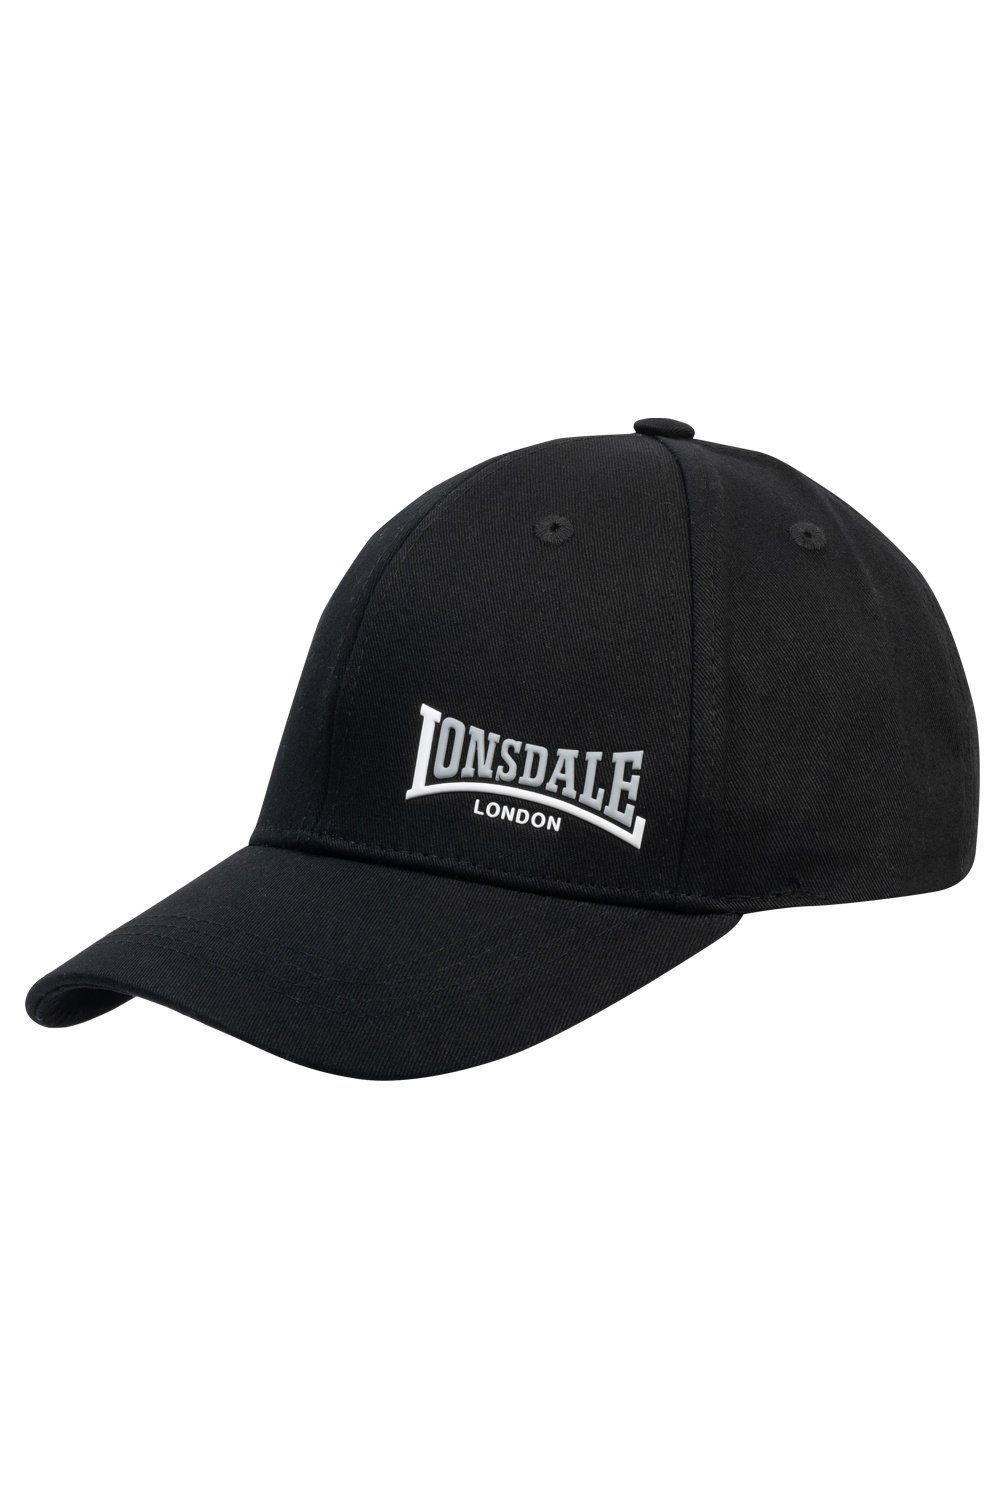 Lonsdale Baseball Cap Lonsdale Unisex Cap Enville black/white/ash